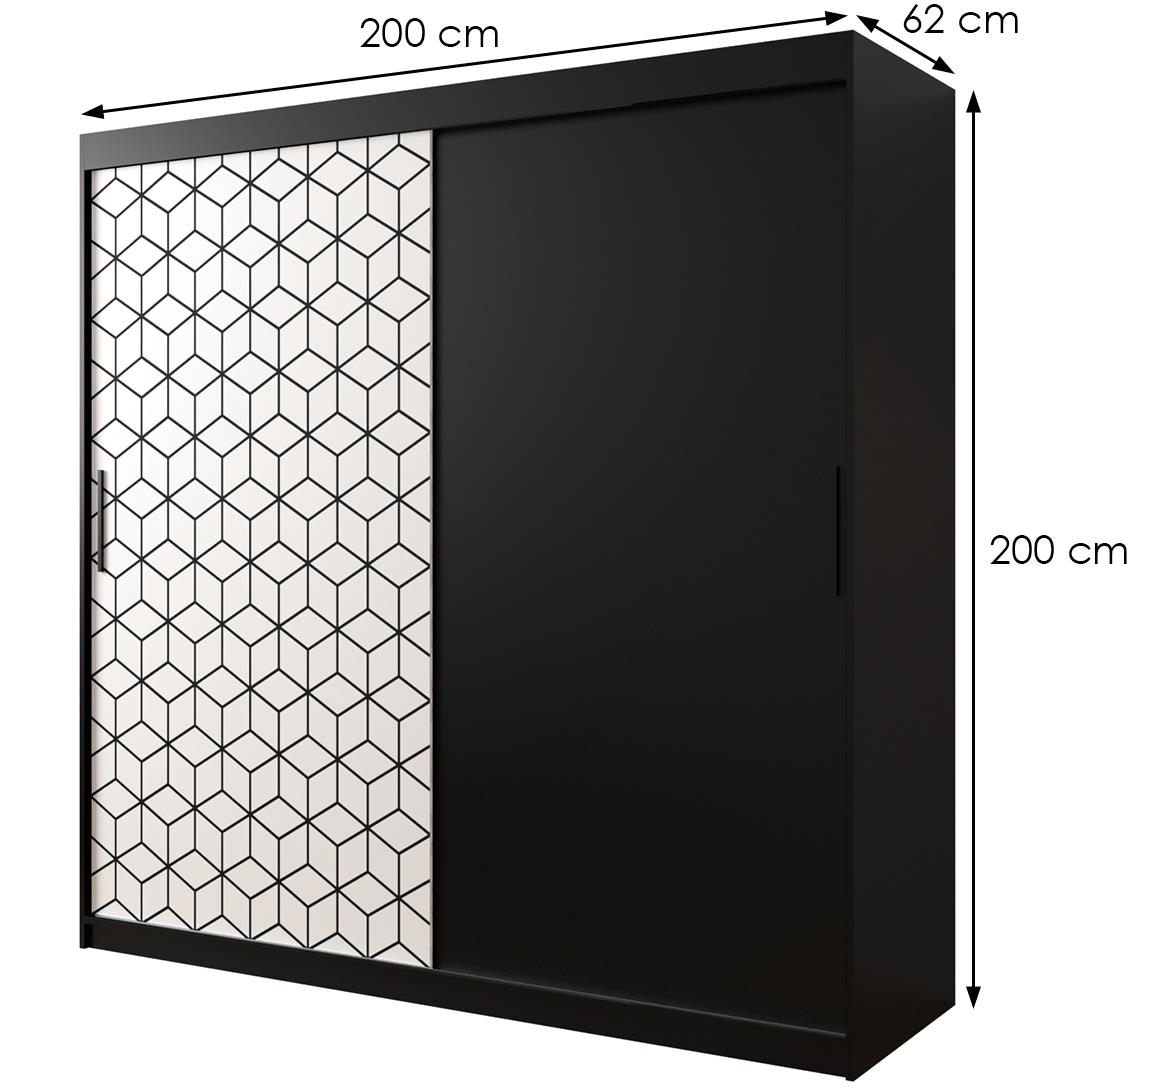 Hexagon ormar 2 vrata 200x62x200 cm crno/beli